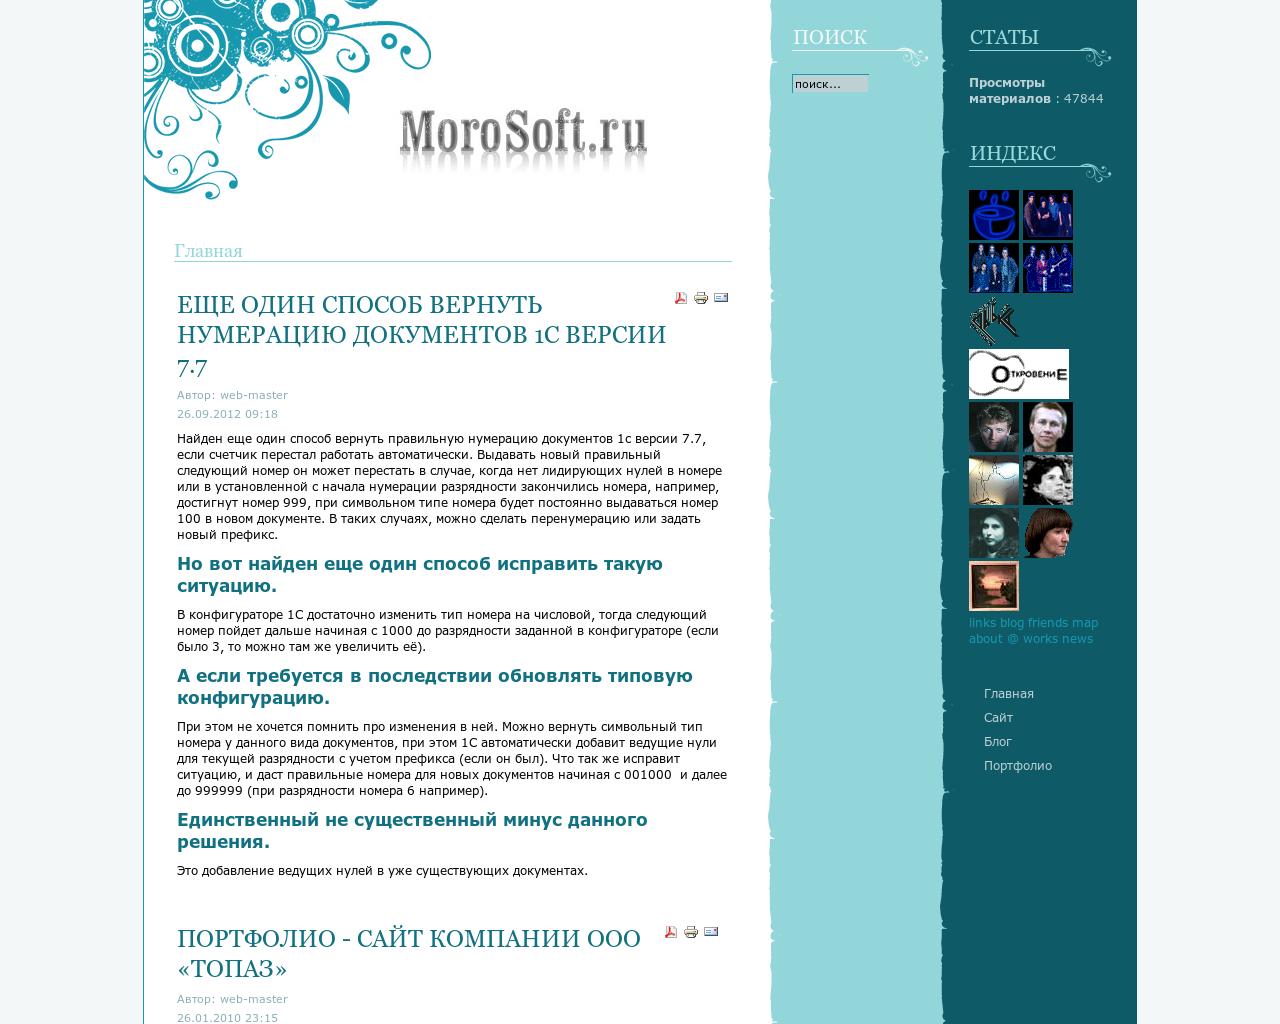 Изображение сайта morosoft.ru в разрешении 1280x1024